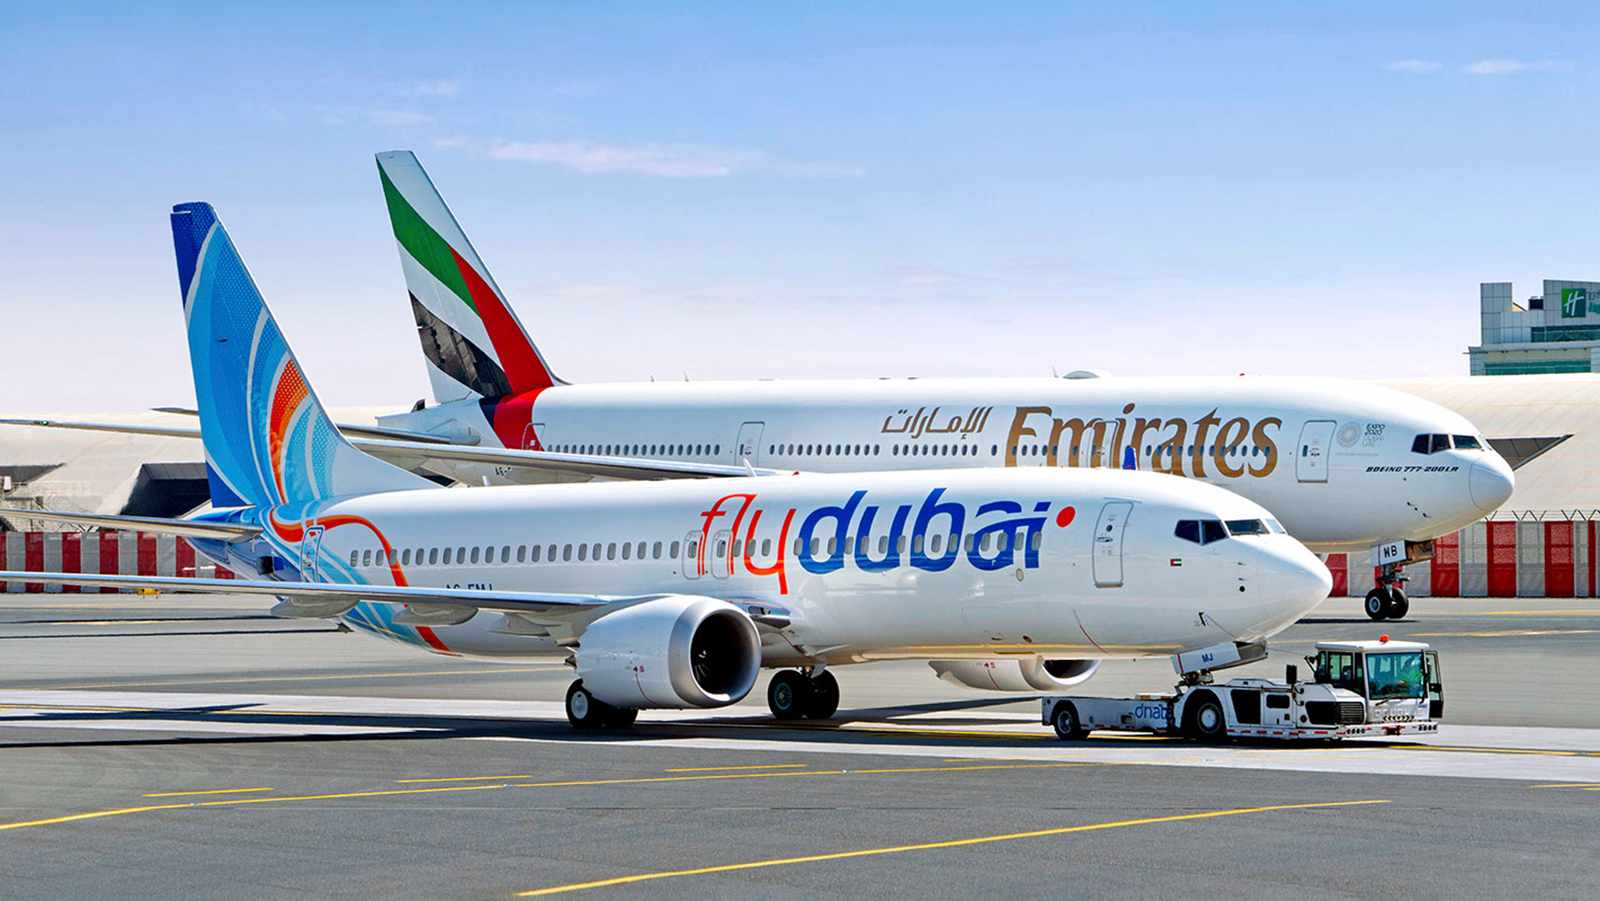 73 مليار دولار صفقات معرض دبي للطيران 2023 في أول أيامه

